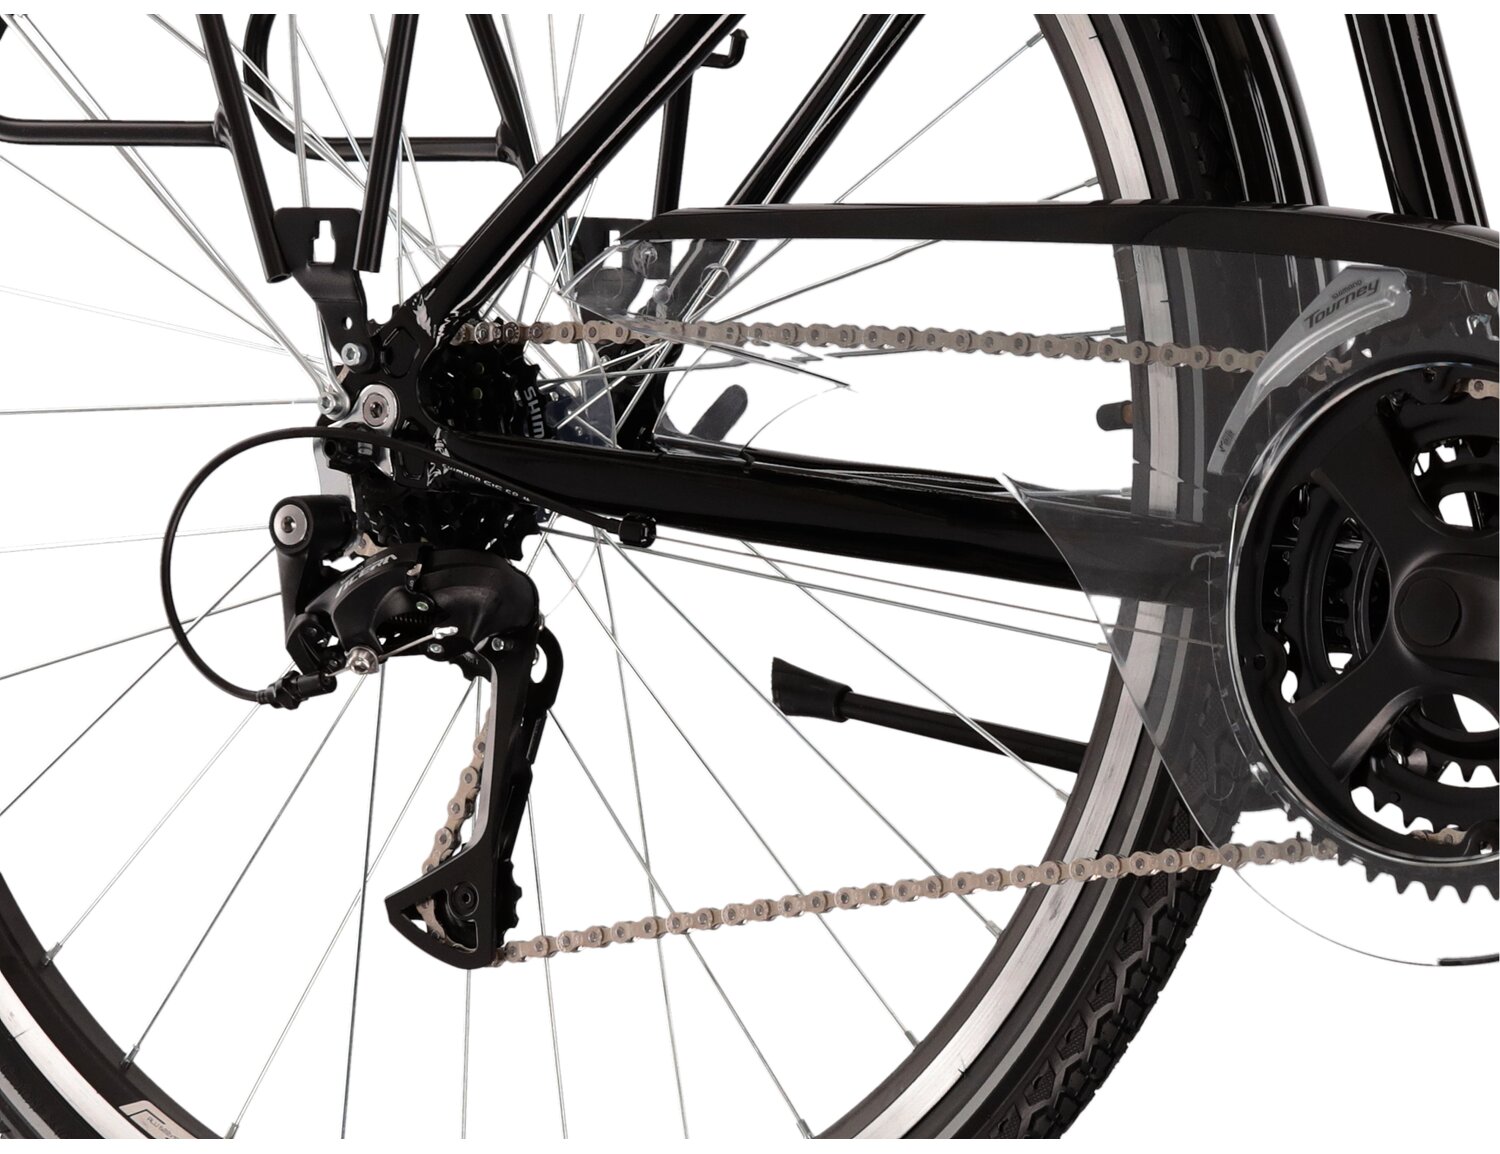  Tylna siedmiobiegowa przerzutka Shimano Acera T3000 oraz hamulce v-brake w rowerze trekkingowym KROSS Trans 4.0 